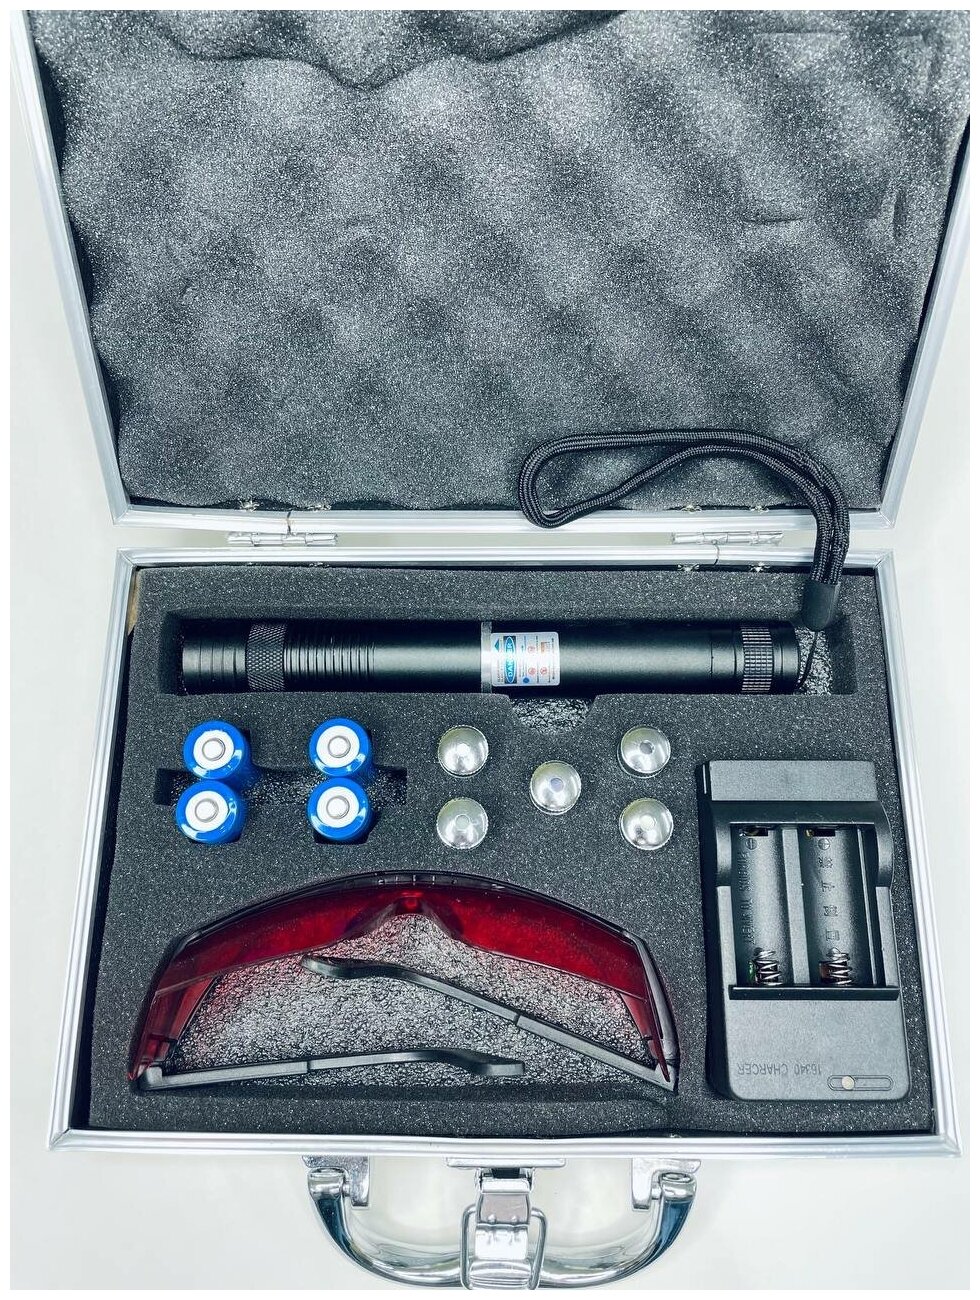 Мощная синяя лазерная указка 008 50.000mW. 2 комплекта аккумуляторов, 5 насадок, очки защитные, зарядка, в кейсе.